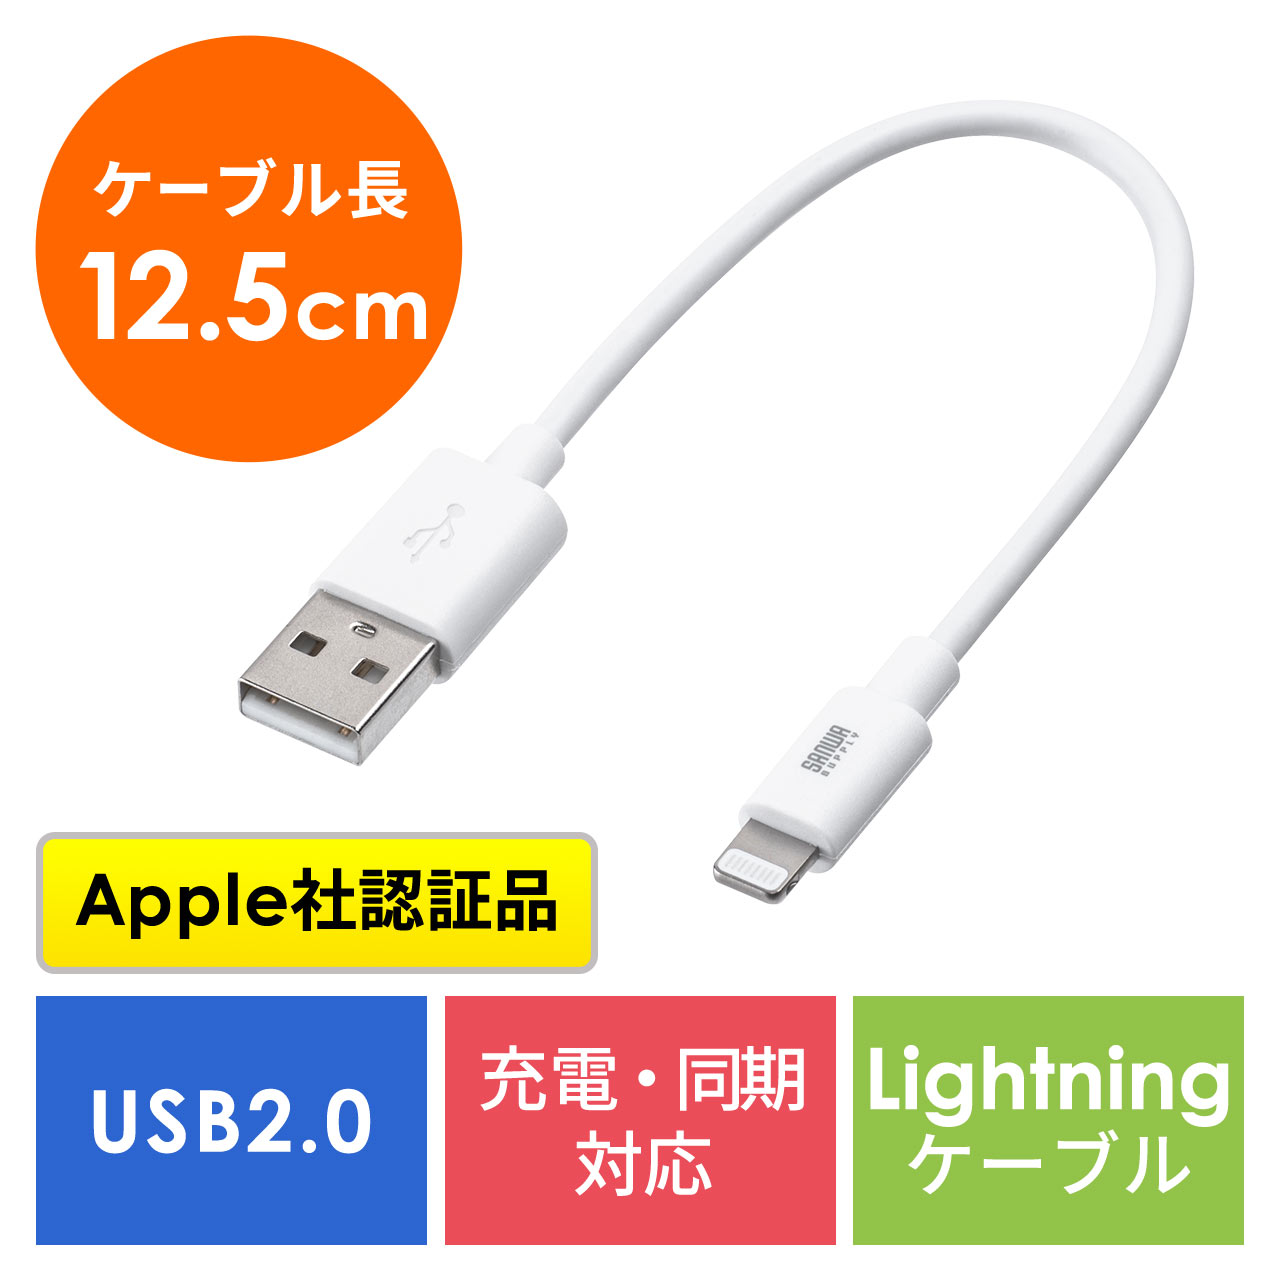 短い Lightningケーブル 12cm iPhone iPad 充電 データ通信 Apple MFi認証品 ホワイト  500-IPLM010WK2の販売商品 通販ならサンワダイレクト